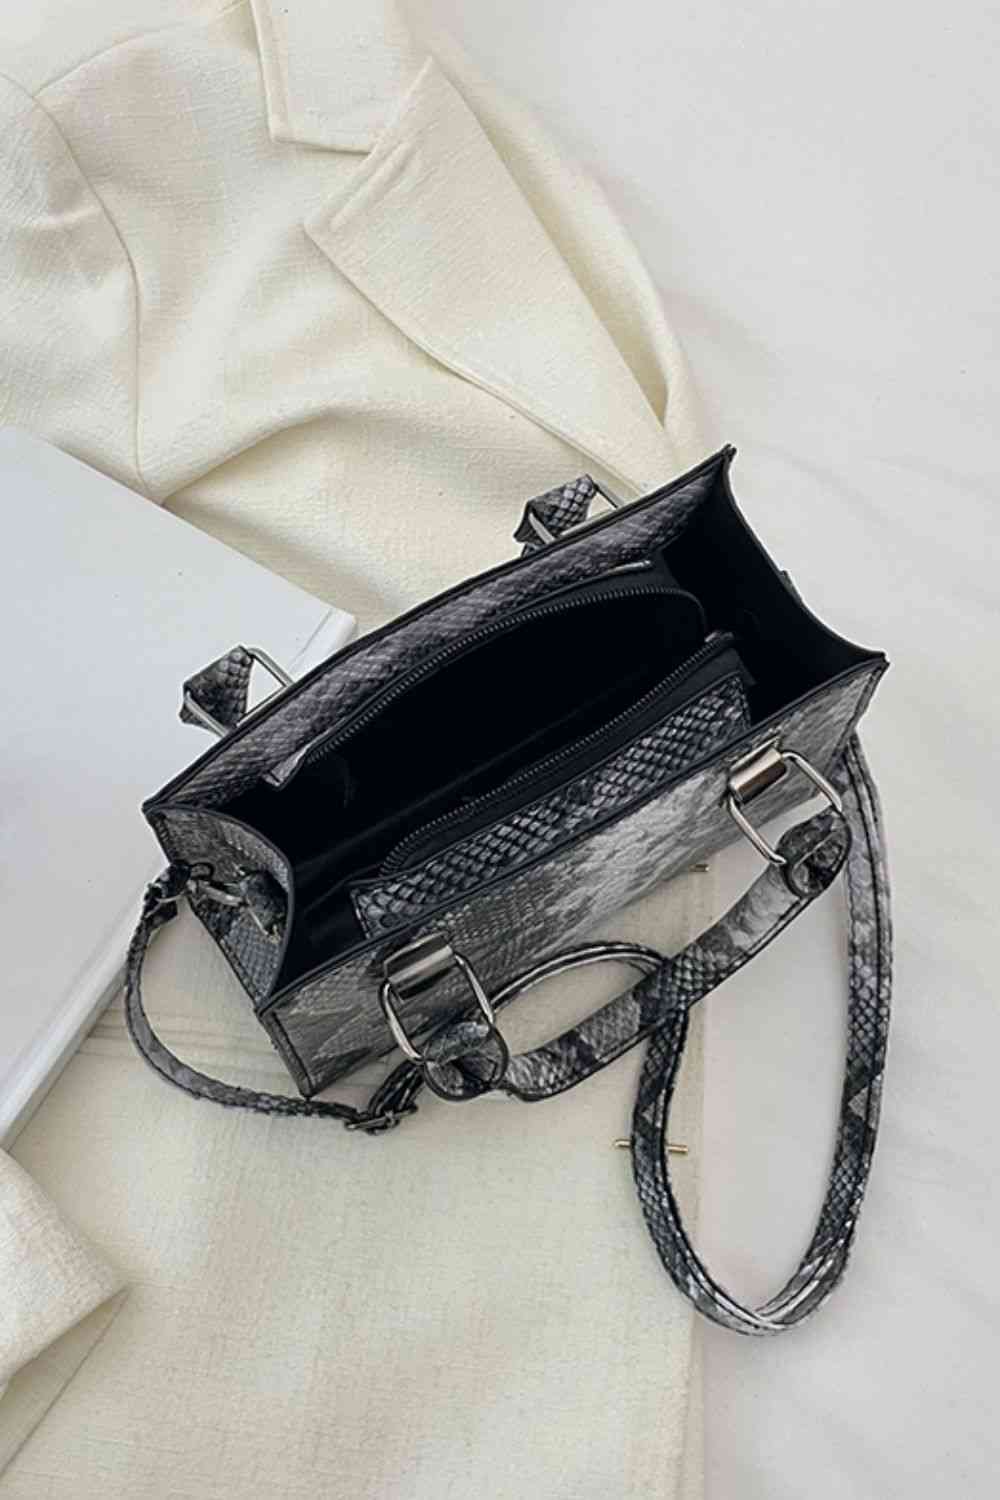 TEEK - Snakeskin Print PU Leather Handbag BAG TEEK Trend   